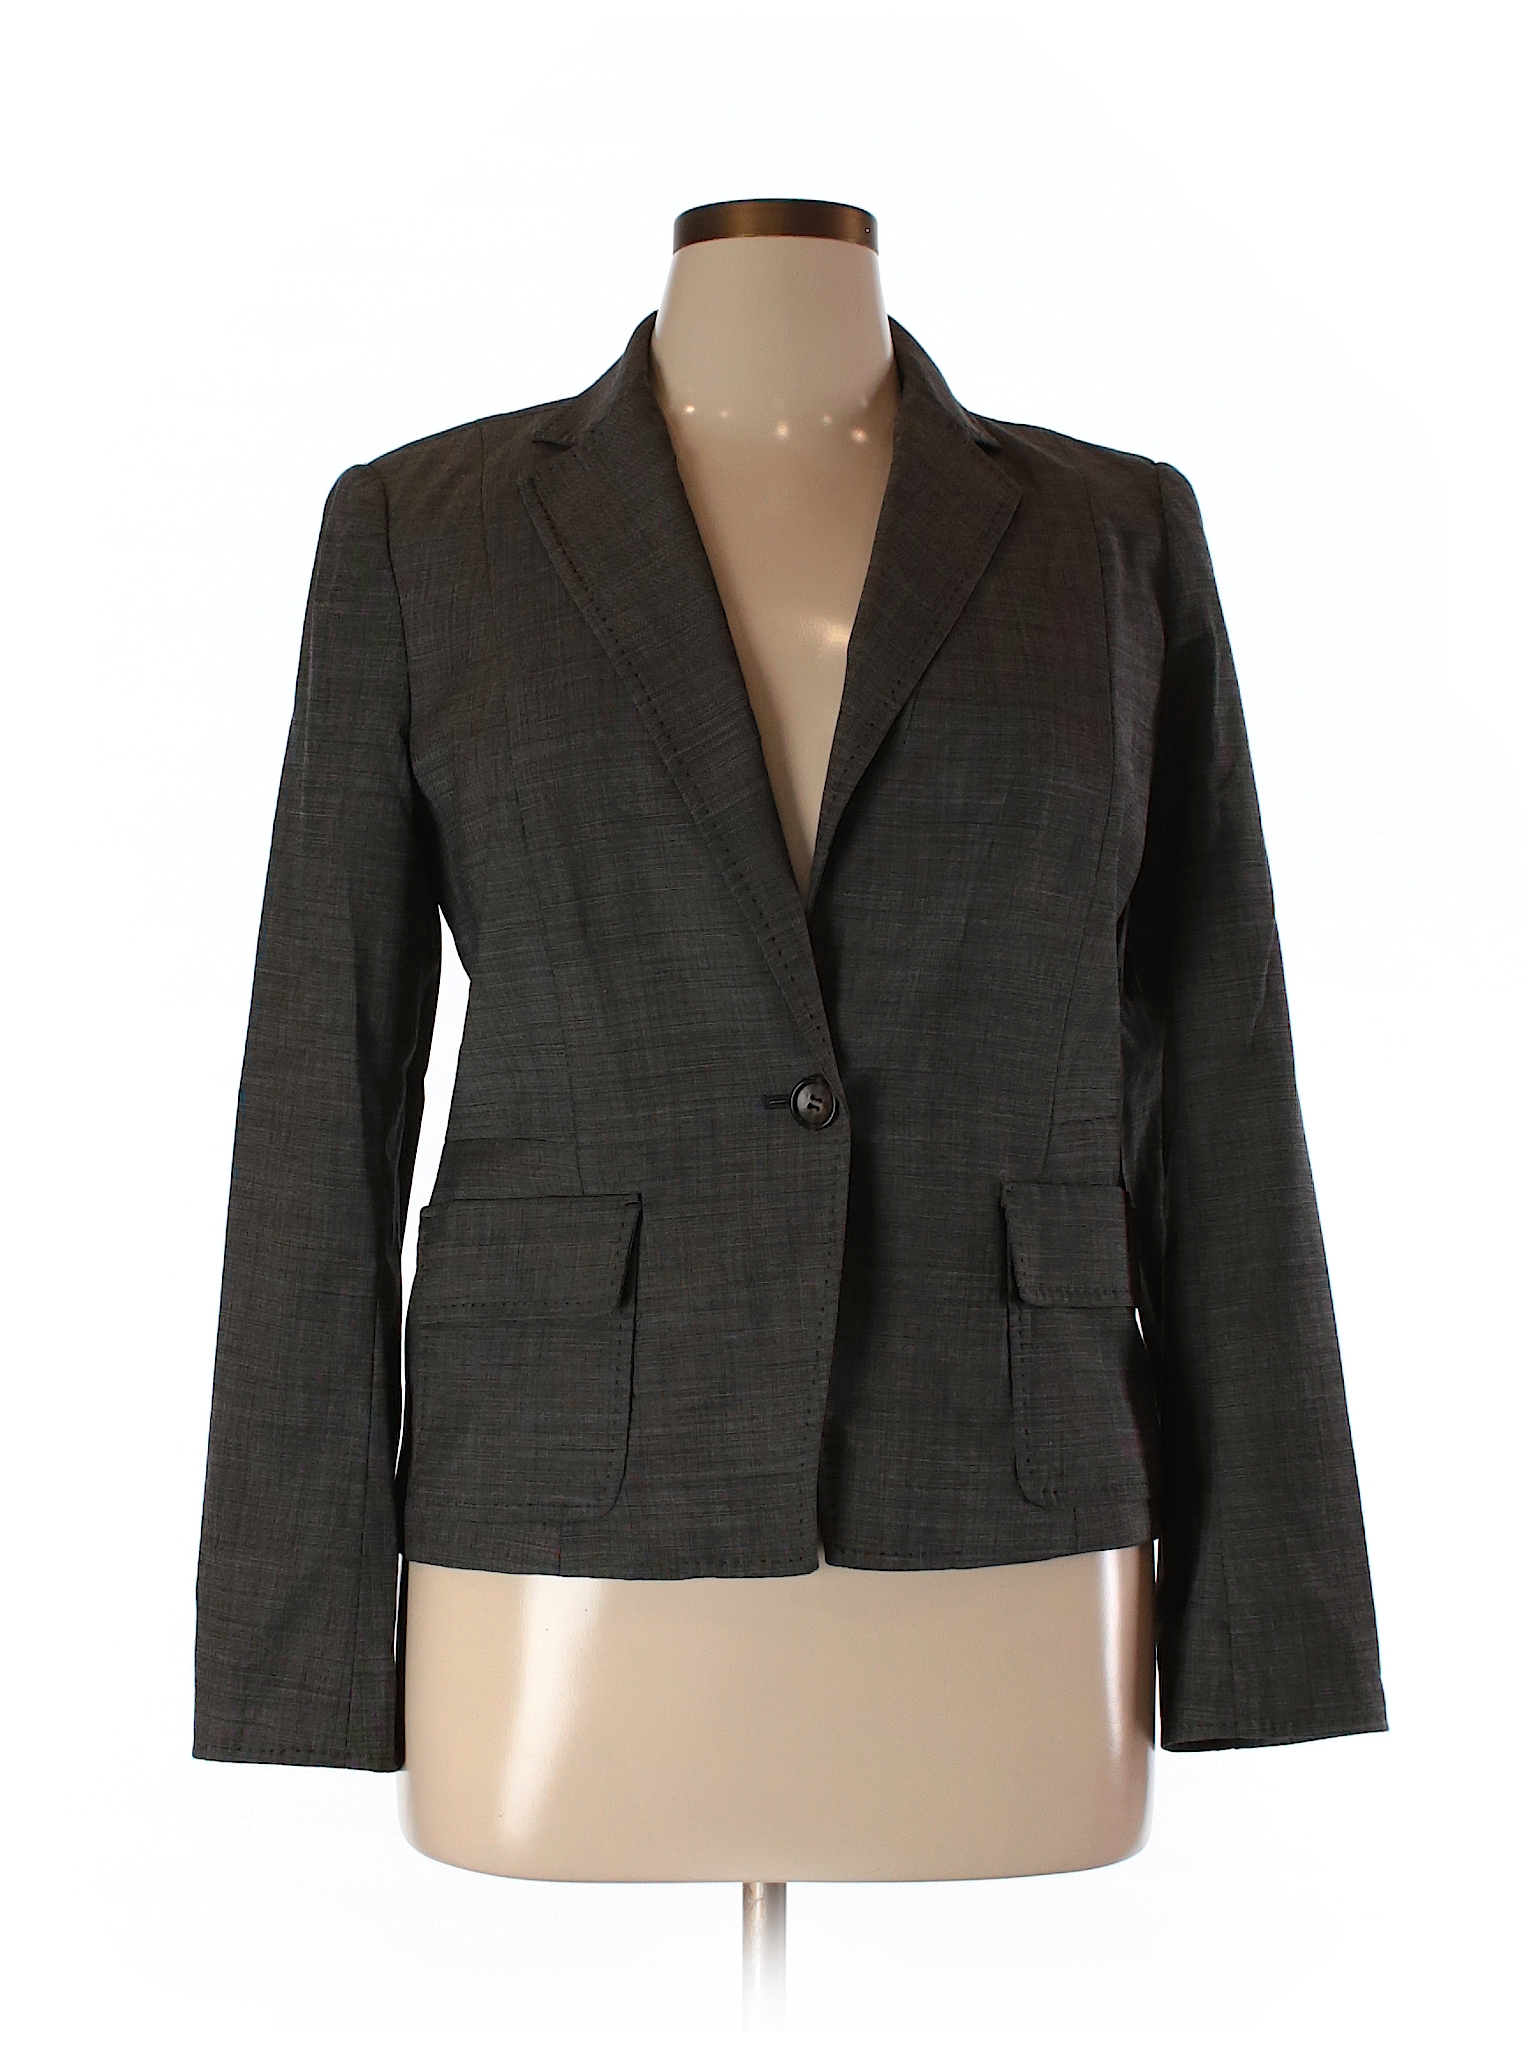 Talbots Solid Gray Wool Blazer Size 14 - 97% off | thredUP